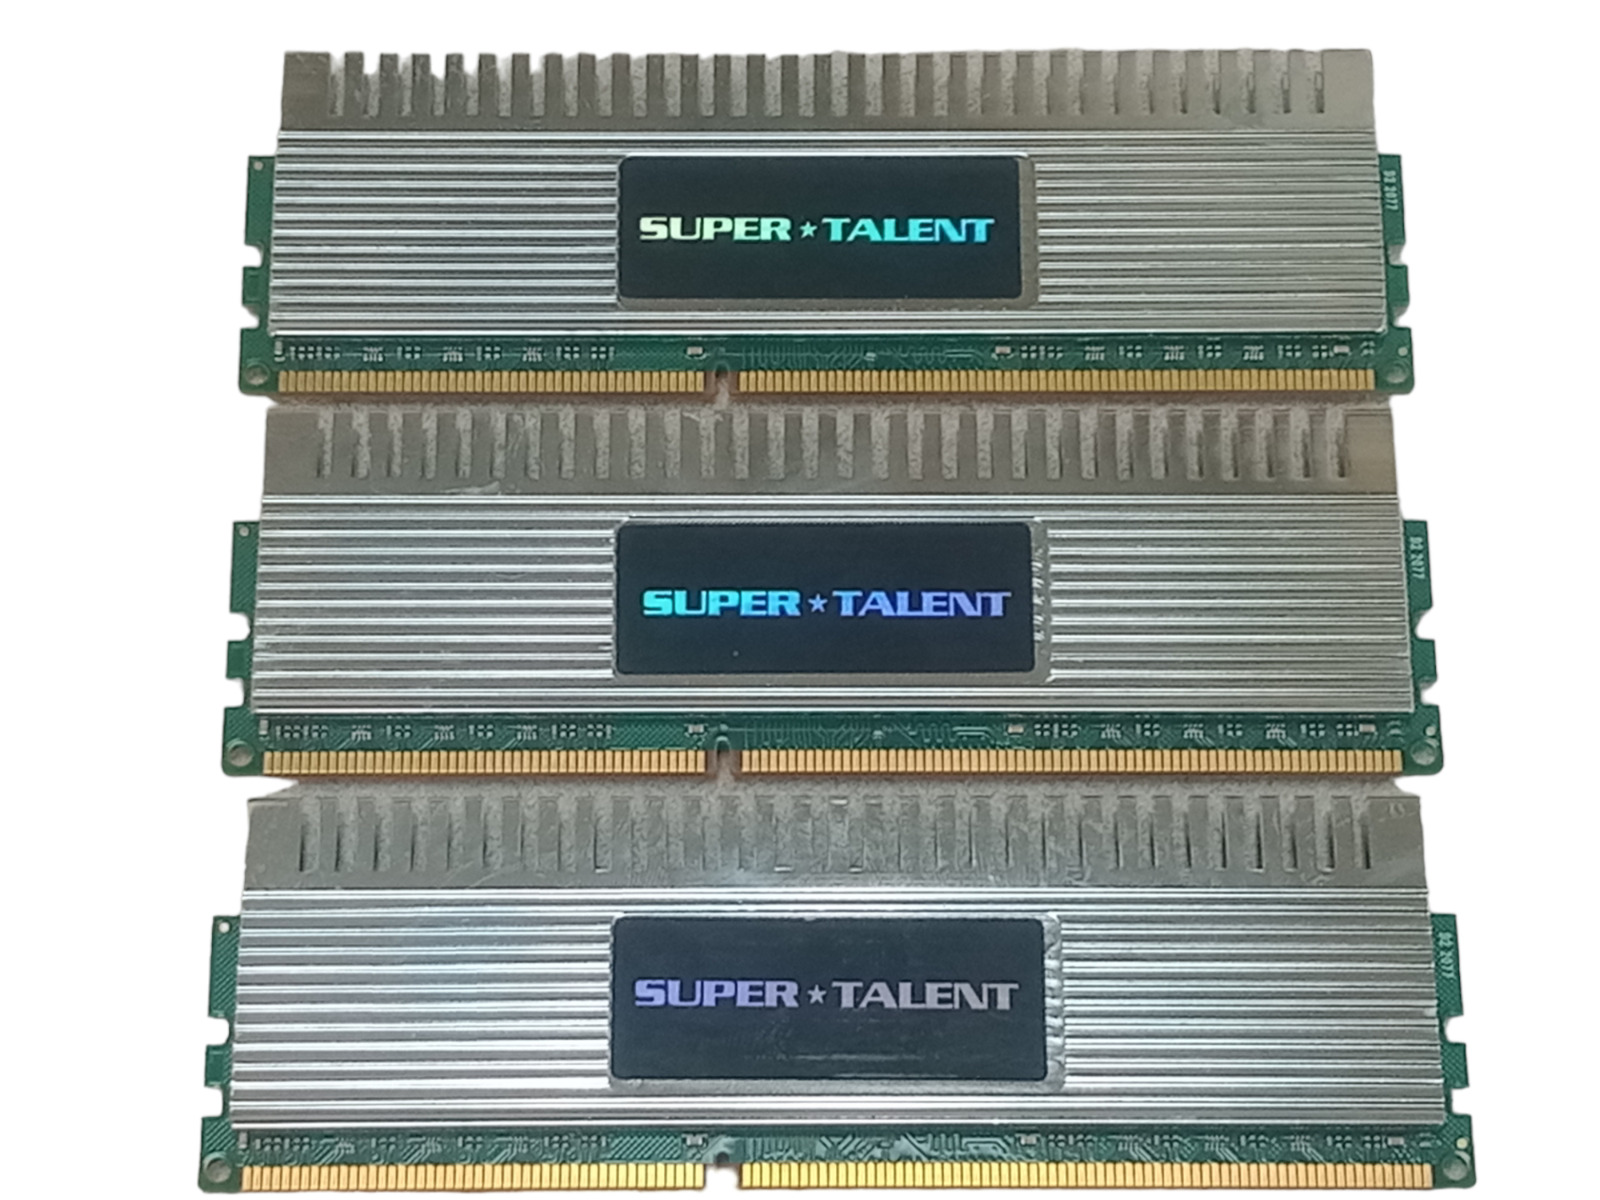 Kit x3 Super Talent WB160UX6G9 6GB (2GBx3) DDR3-1600 PC3-12800 CL9 RAM | Working